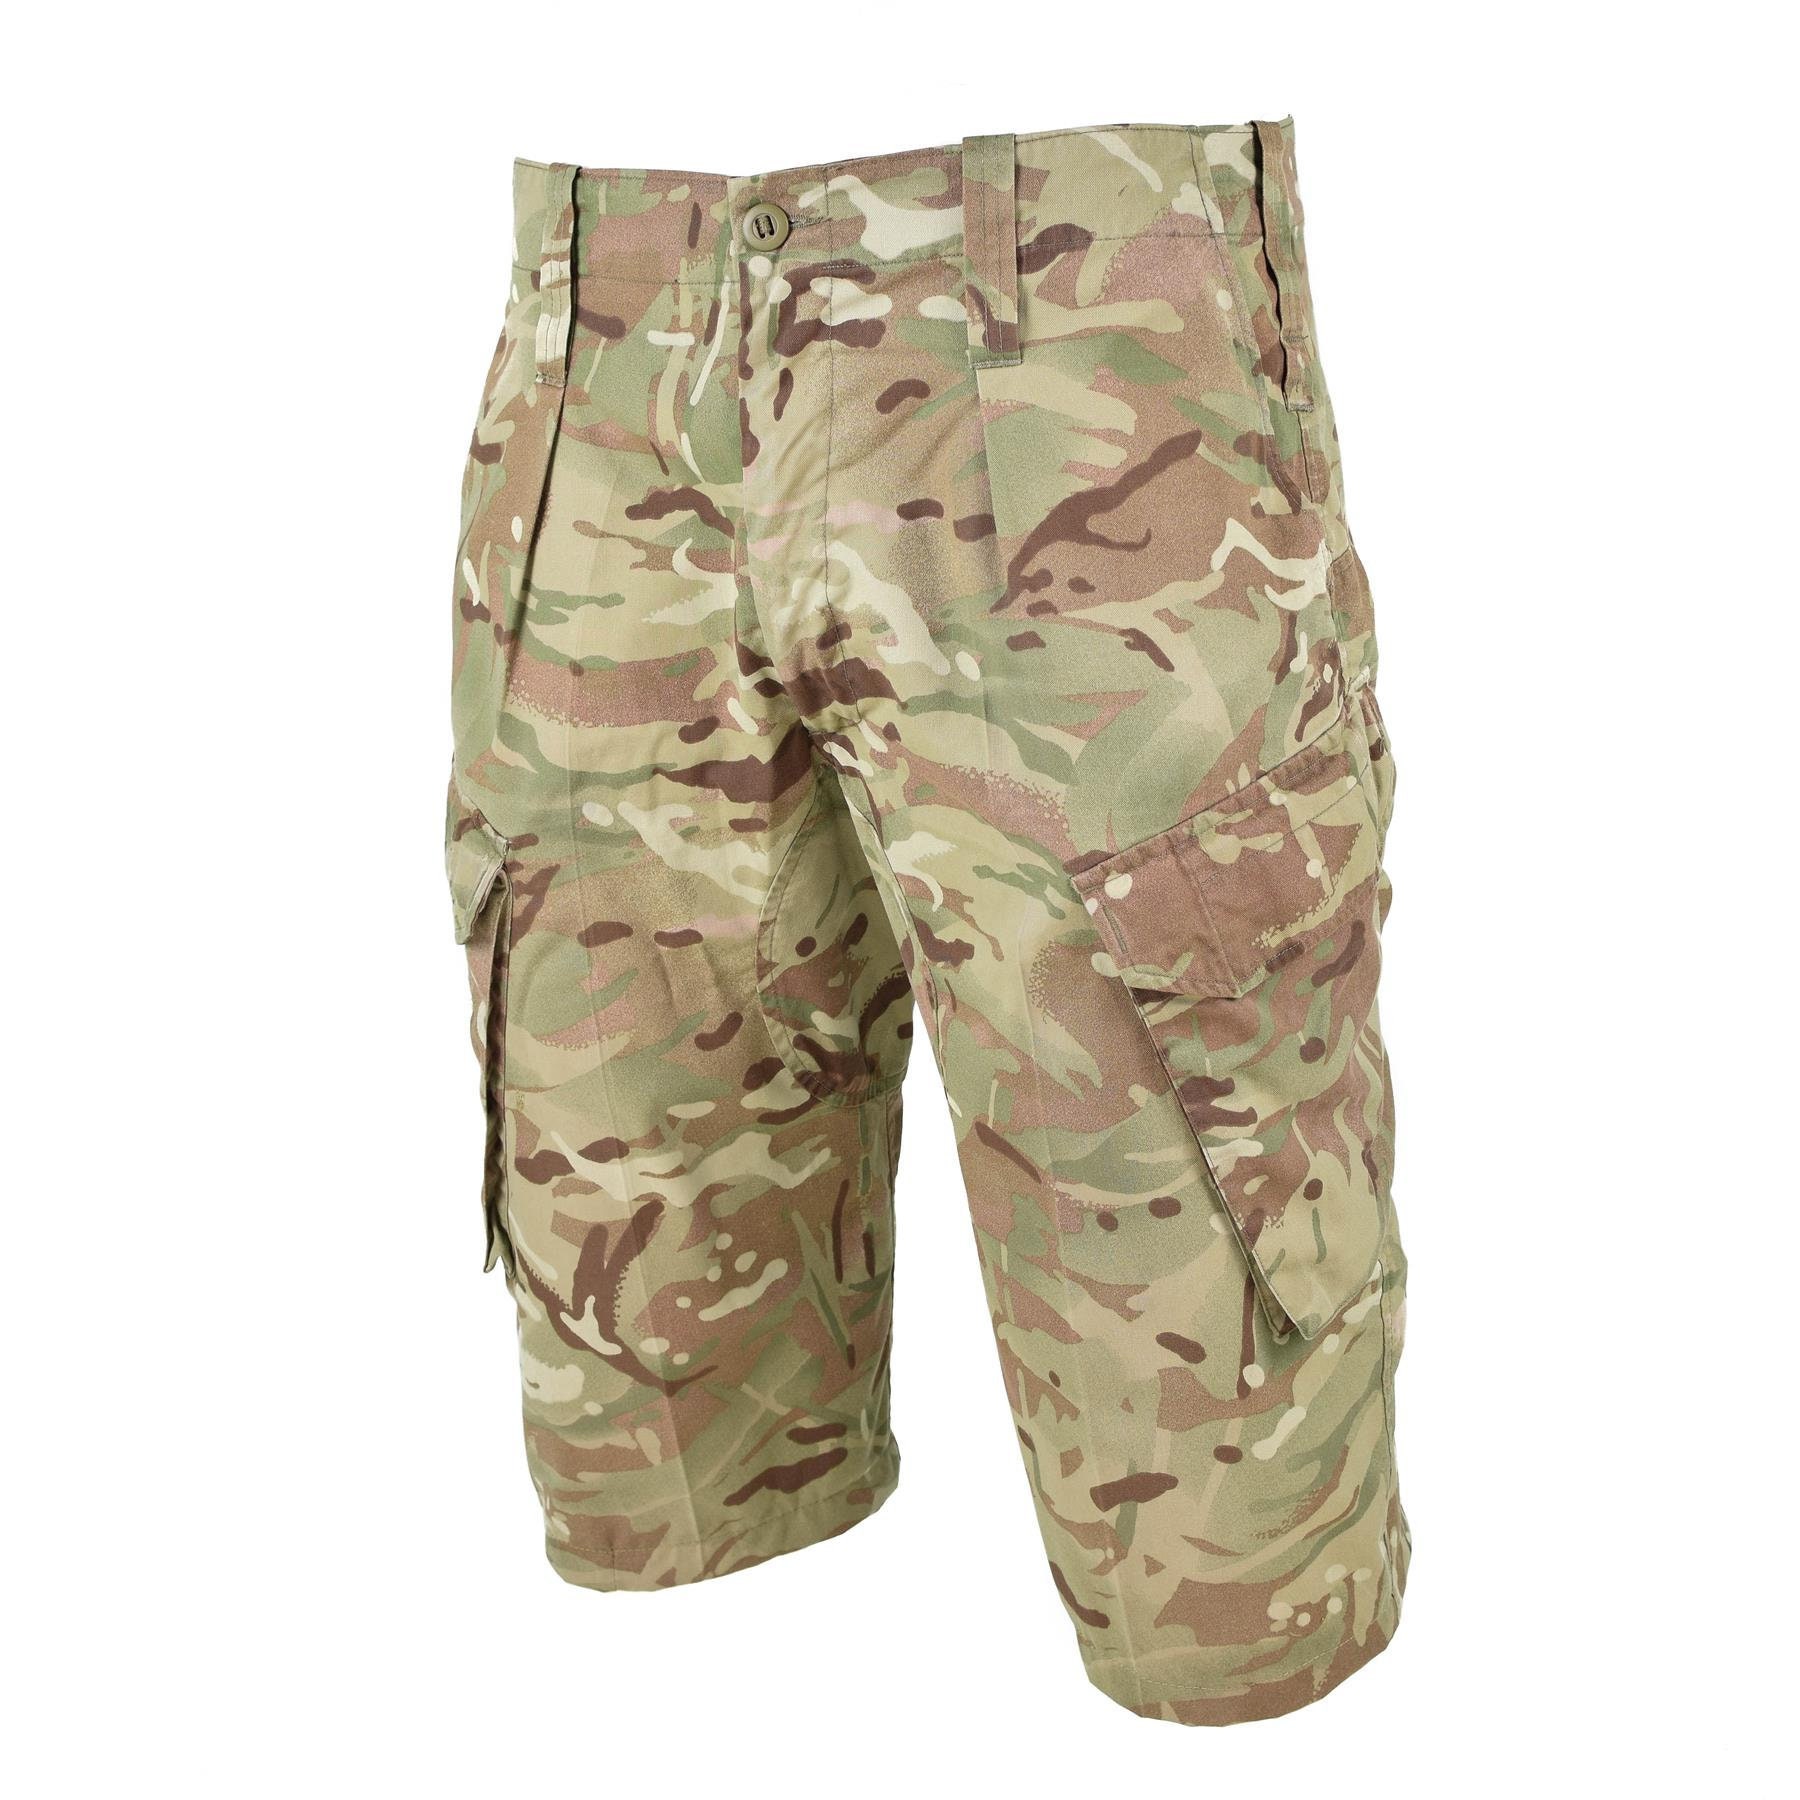 Genuine British army military combat MTP camo shorts military issue bermuda